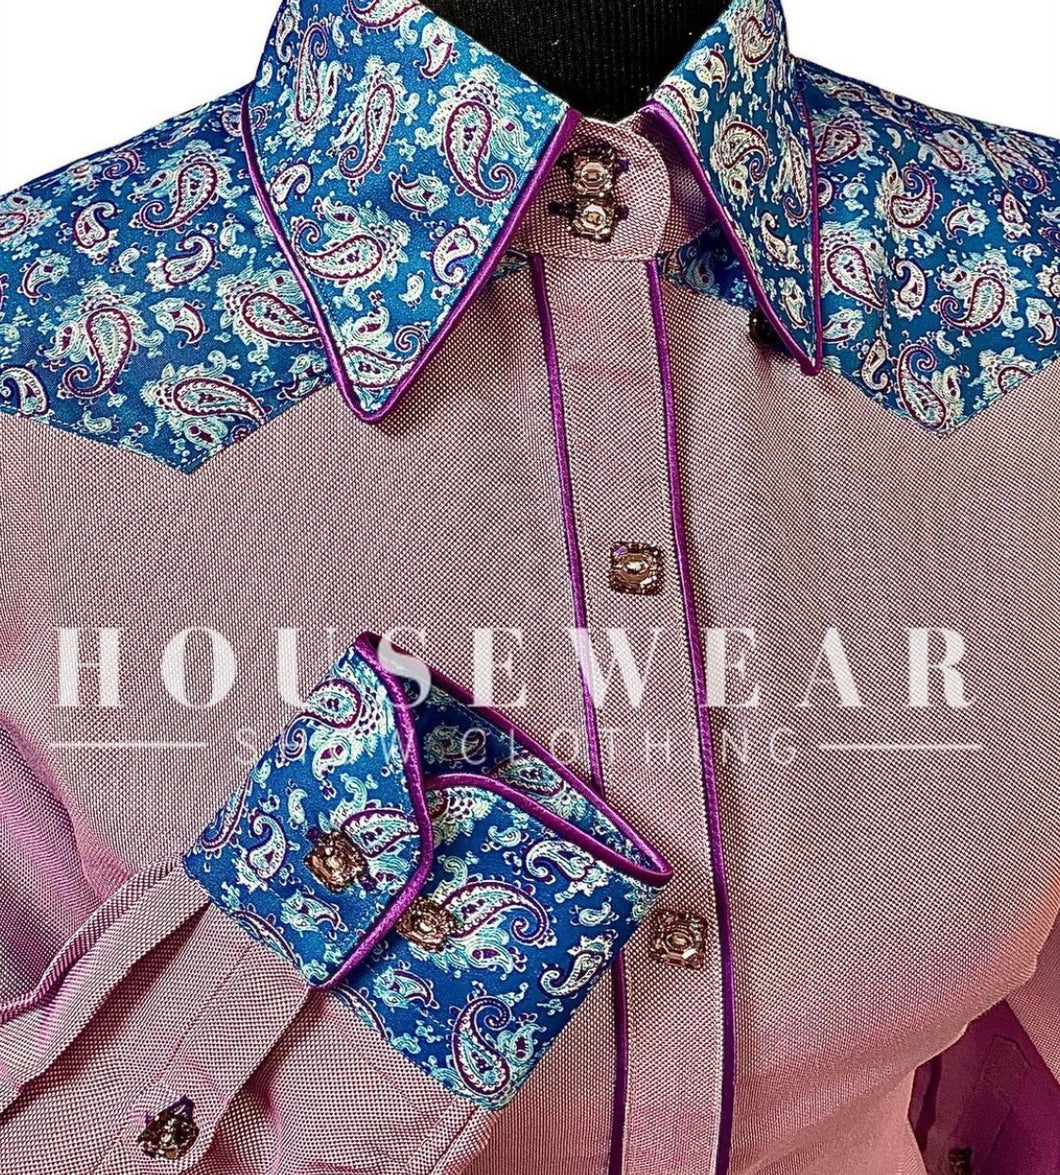 HouseWear Tailored Collection Light Purple & Blue Paisley Yoke Shirt - Small